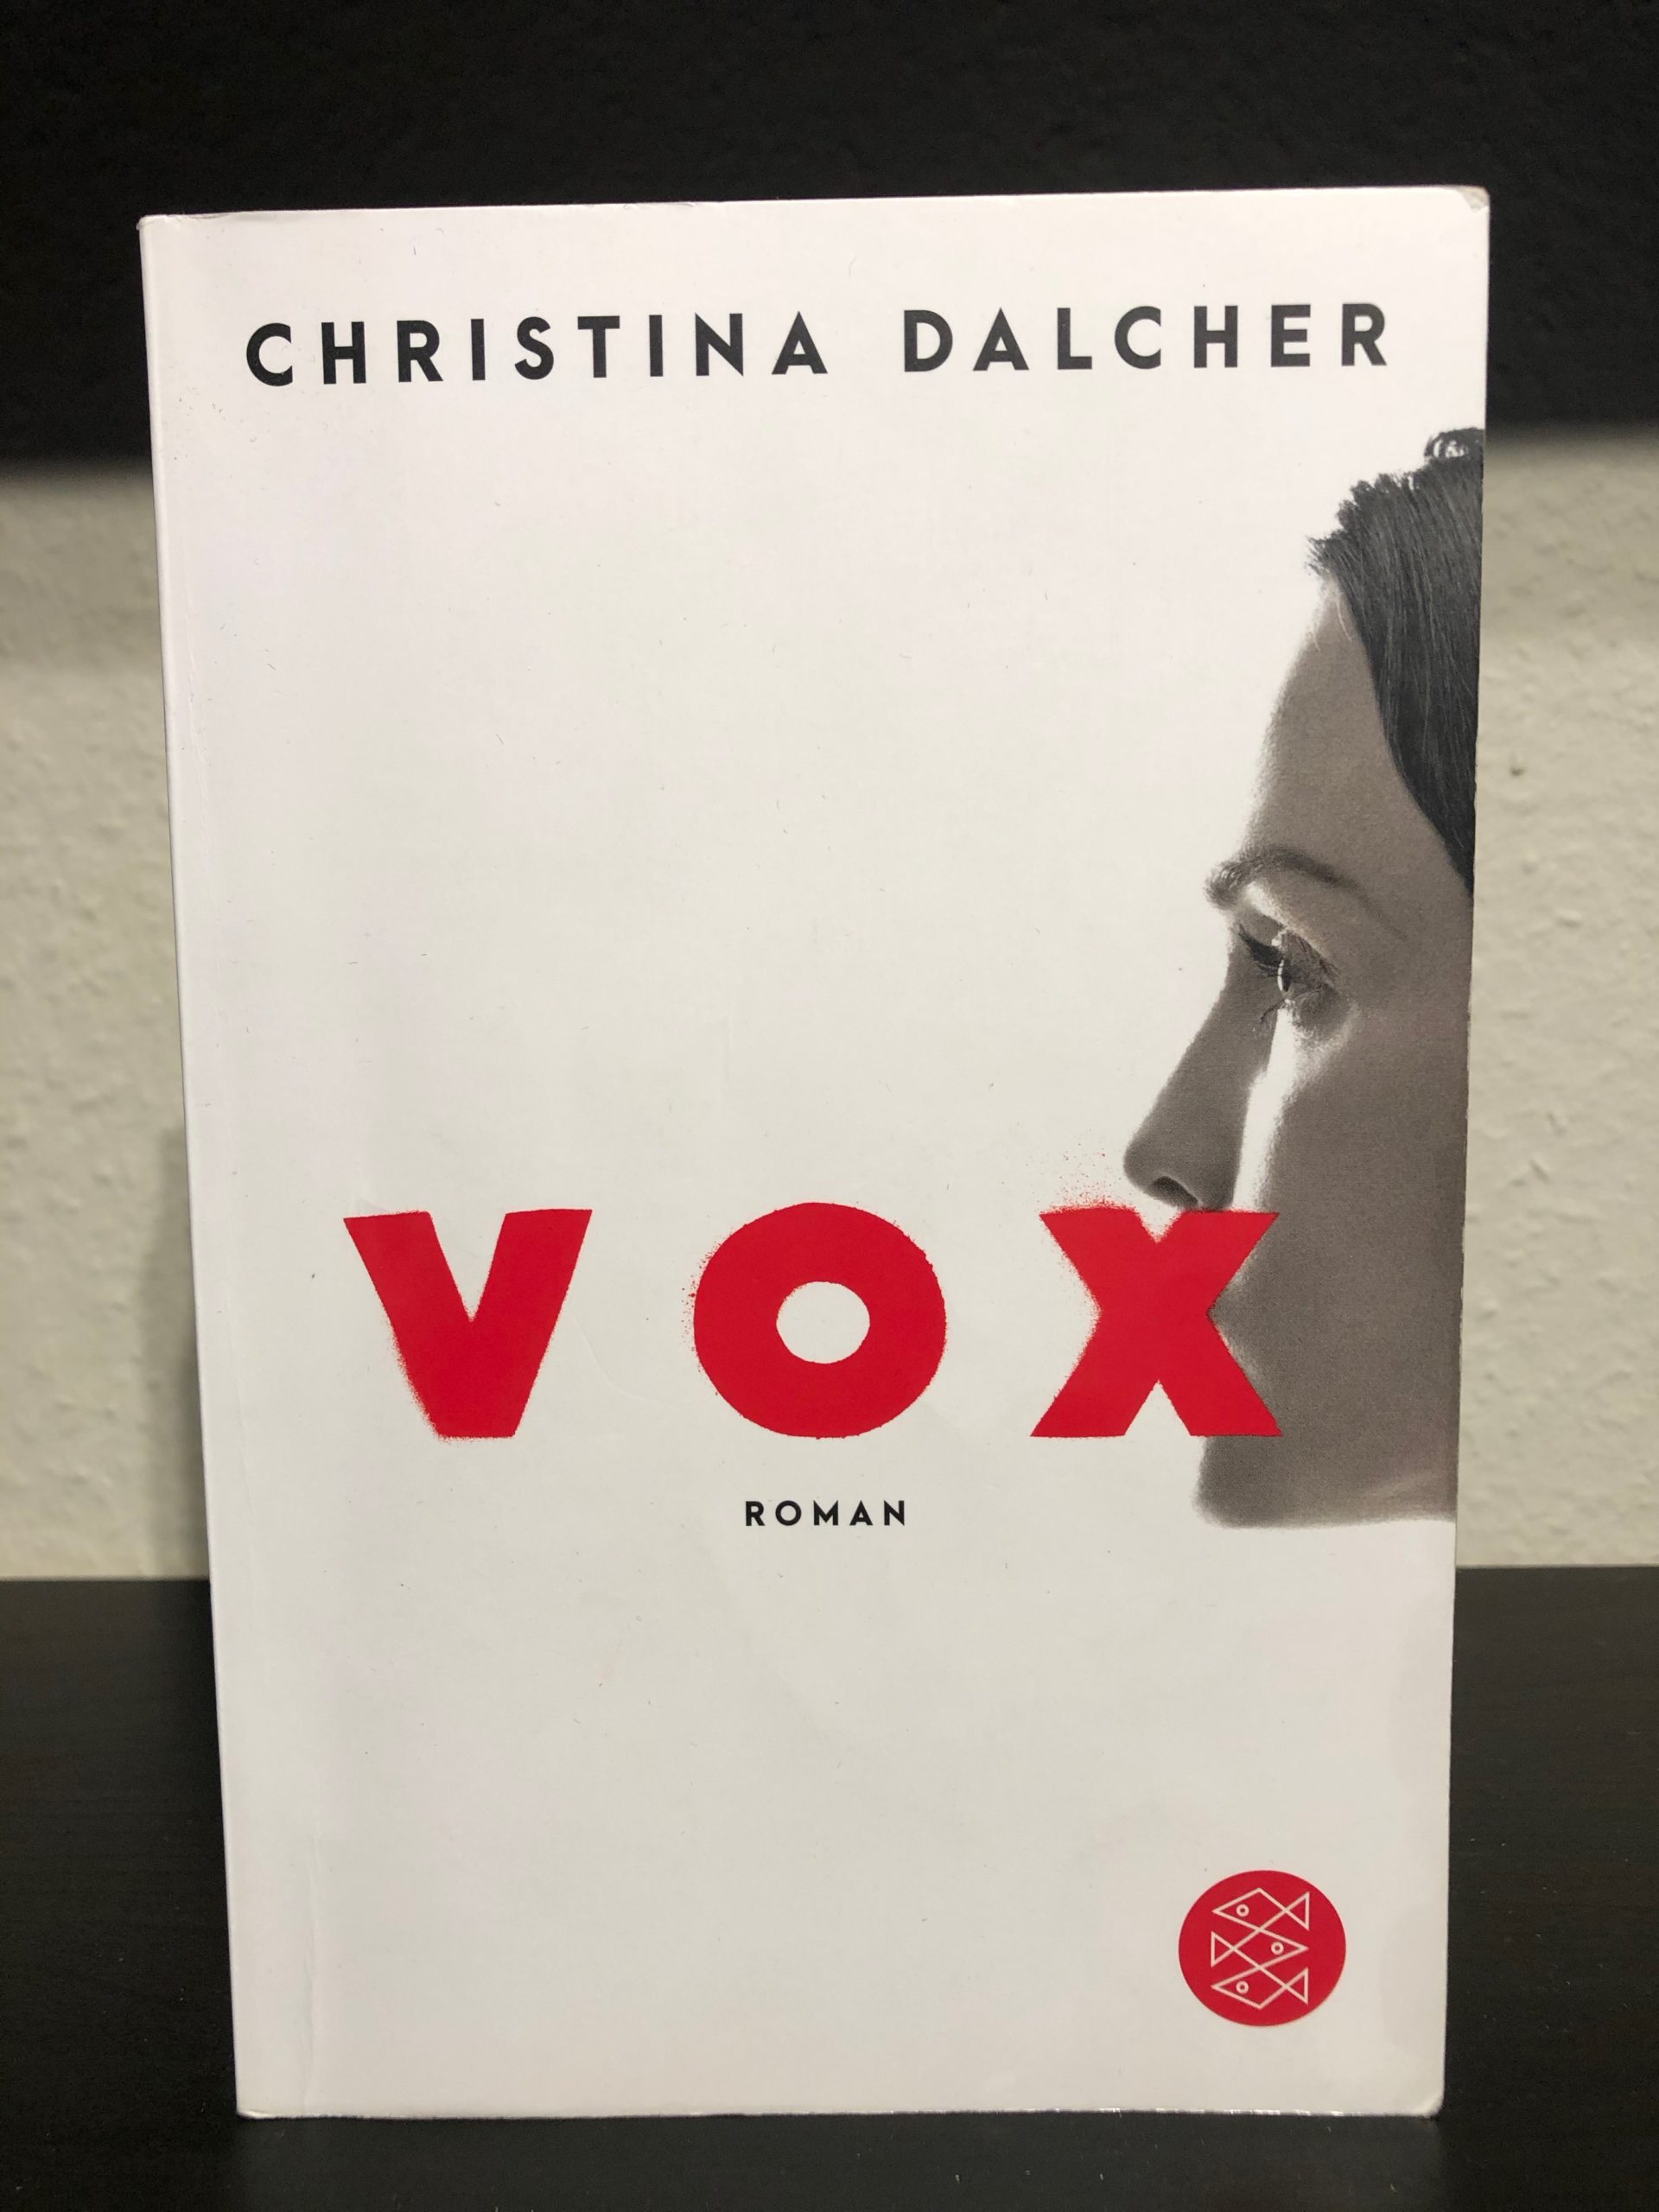 Vox - Christina Dalcher main image